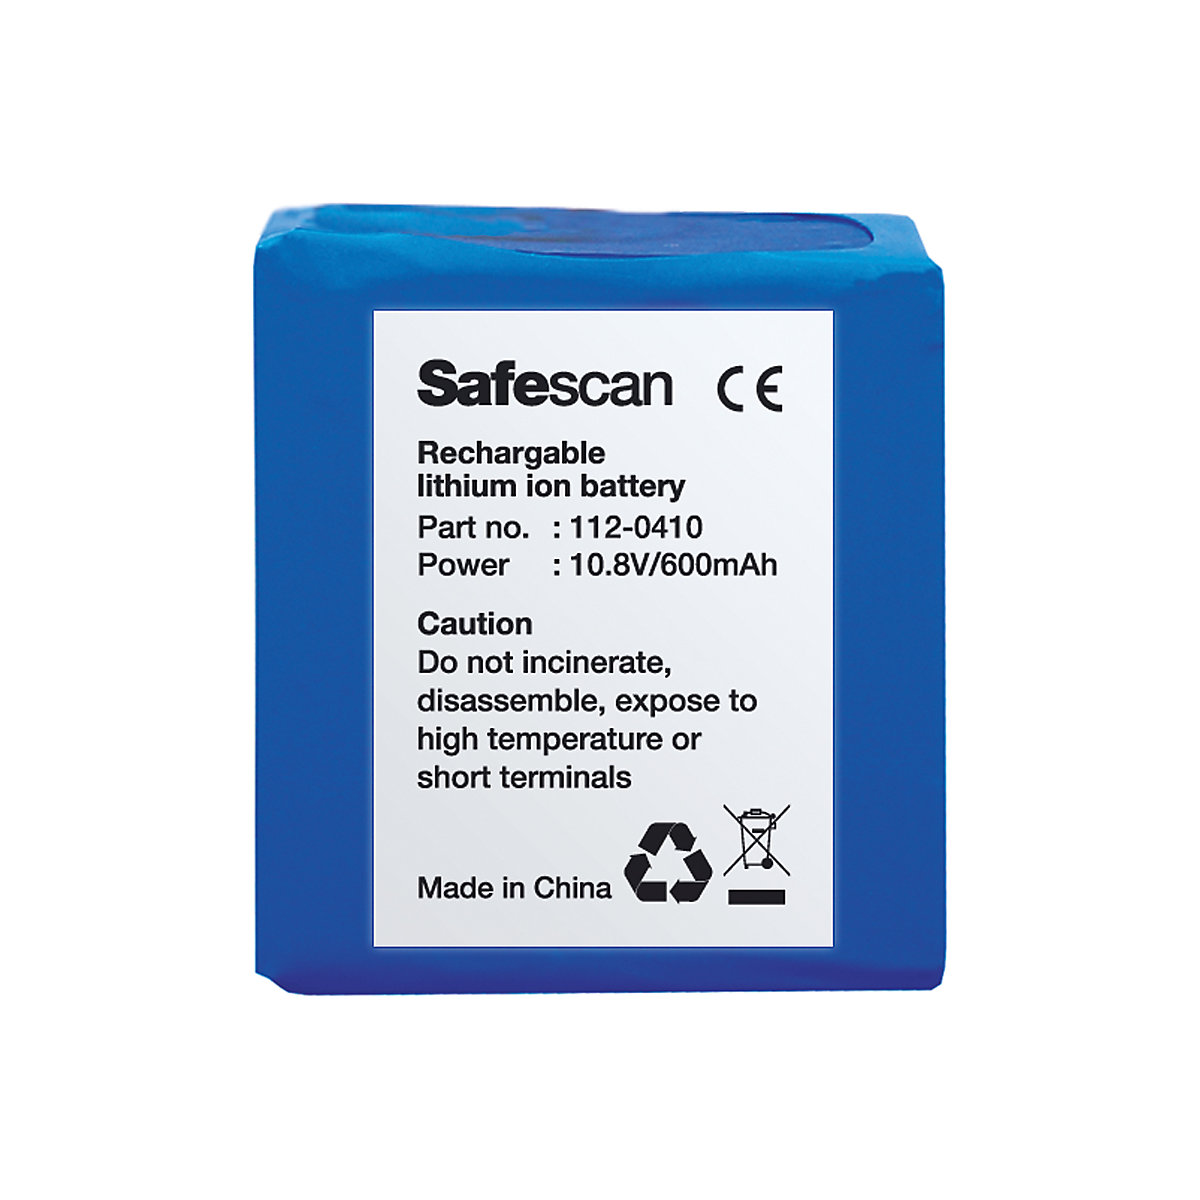 Bateria recarregável – Safescan